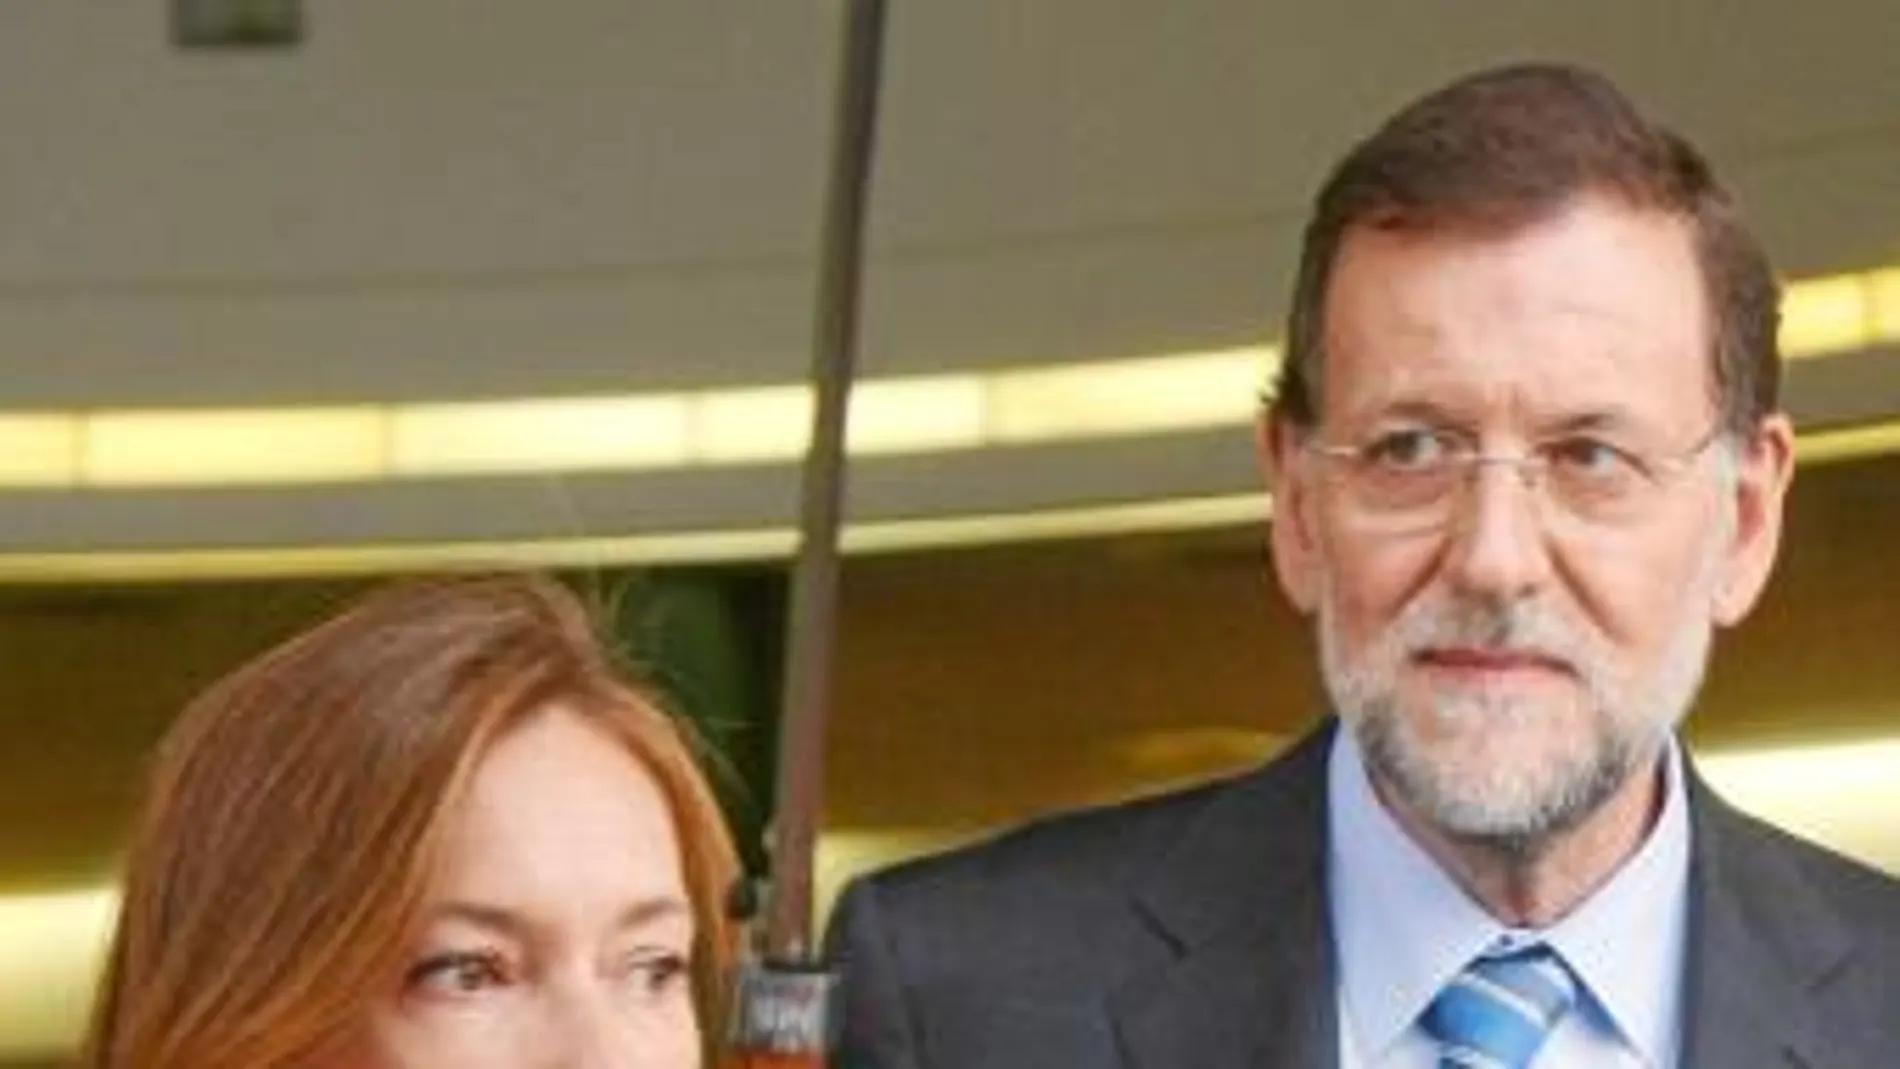 Mariano Rajoy acudió al sepelio acompañado por su esposa